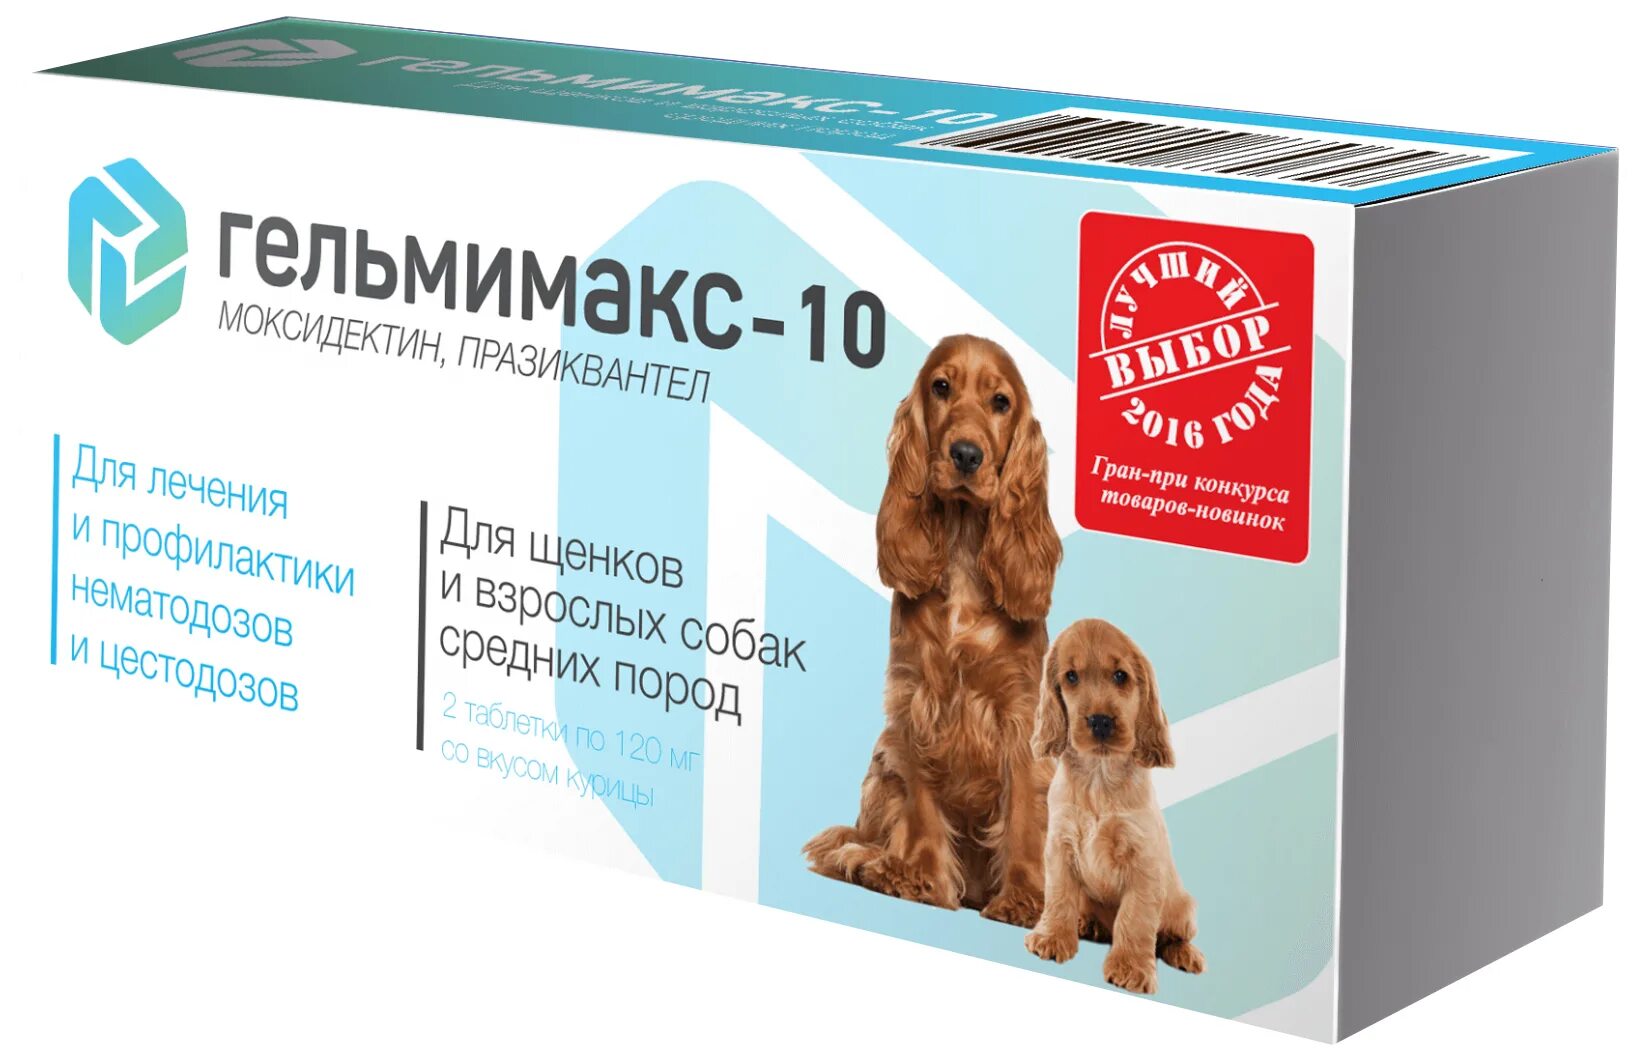 Apicenna Гельмимакс - 10 таблетки для щенков и взрослых средних пород 2 таб.. Гельмимакс 10 для щенков и собак средних пород. Apicenna Гельмимакс-10 таблетки для щенков и взрослых собак средних пород. Гельмимакс для кошек и собак.